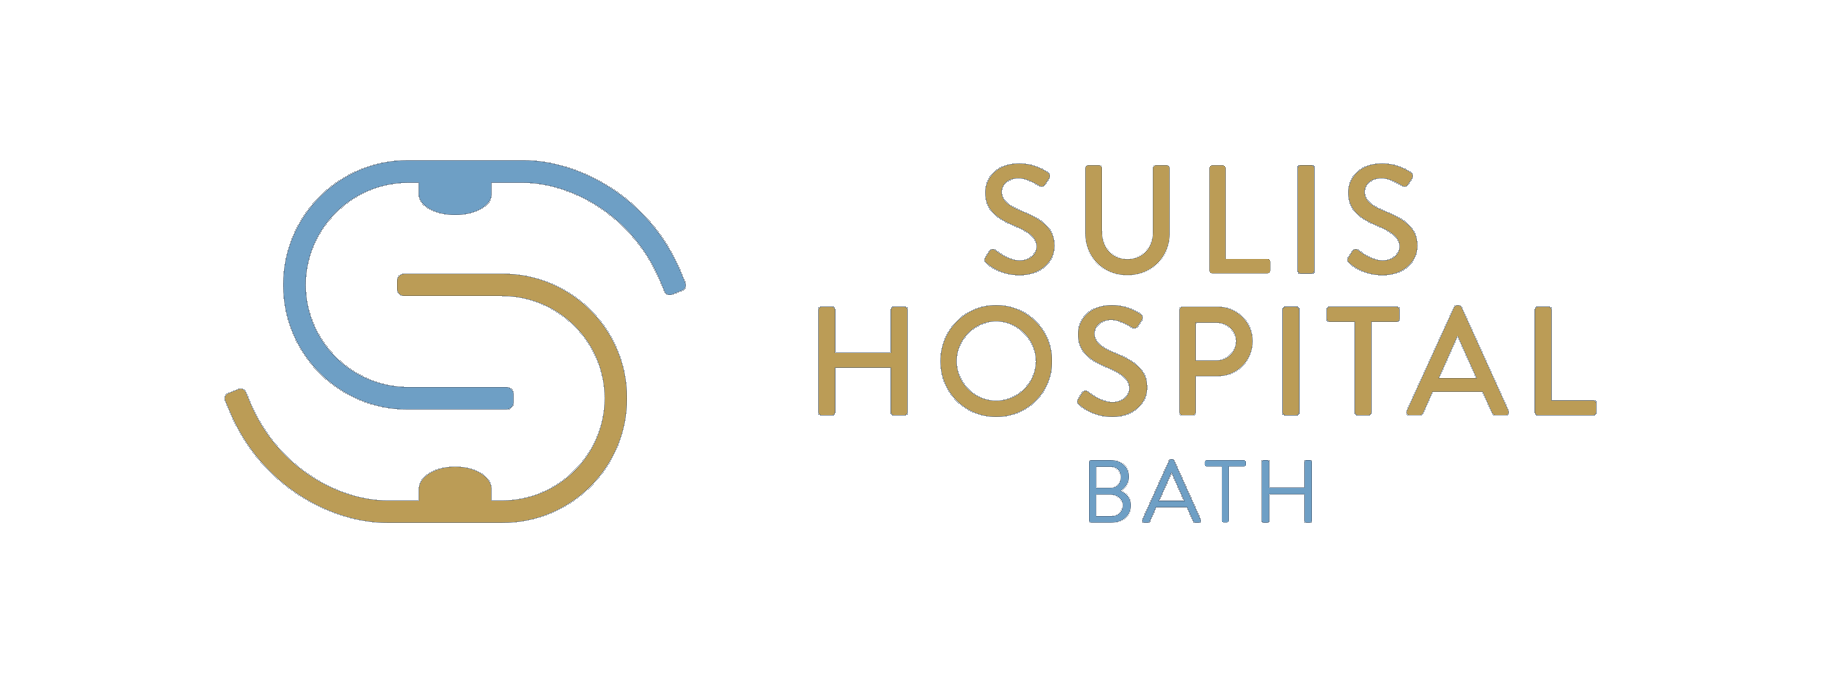 Bath - Sulis Hospital logo